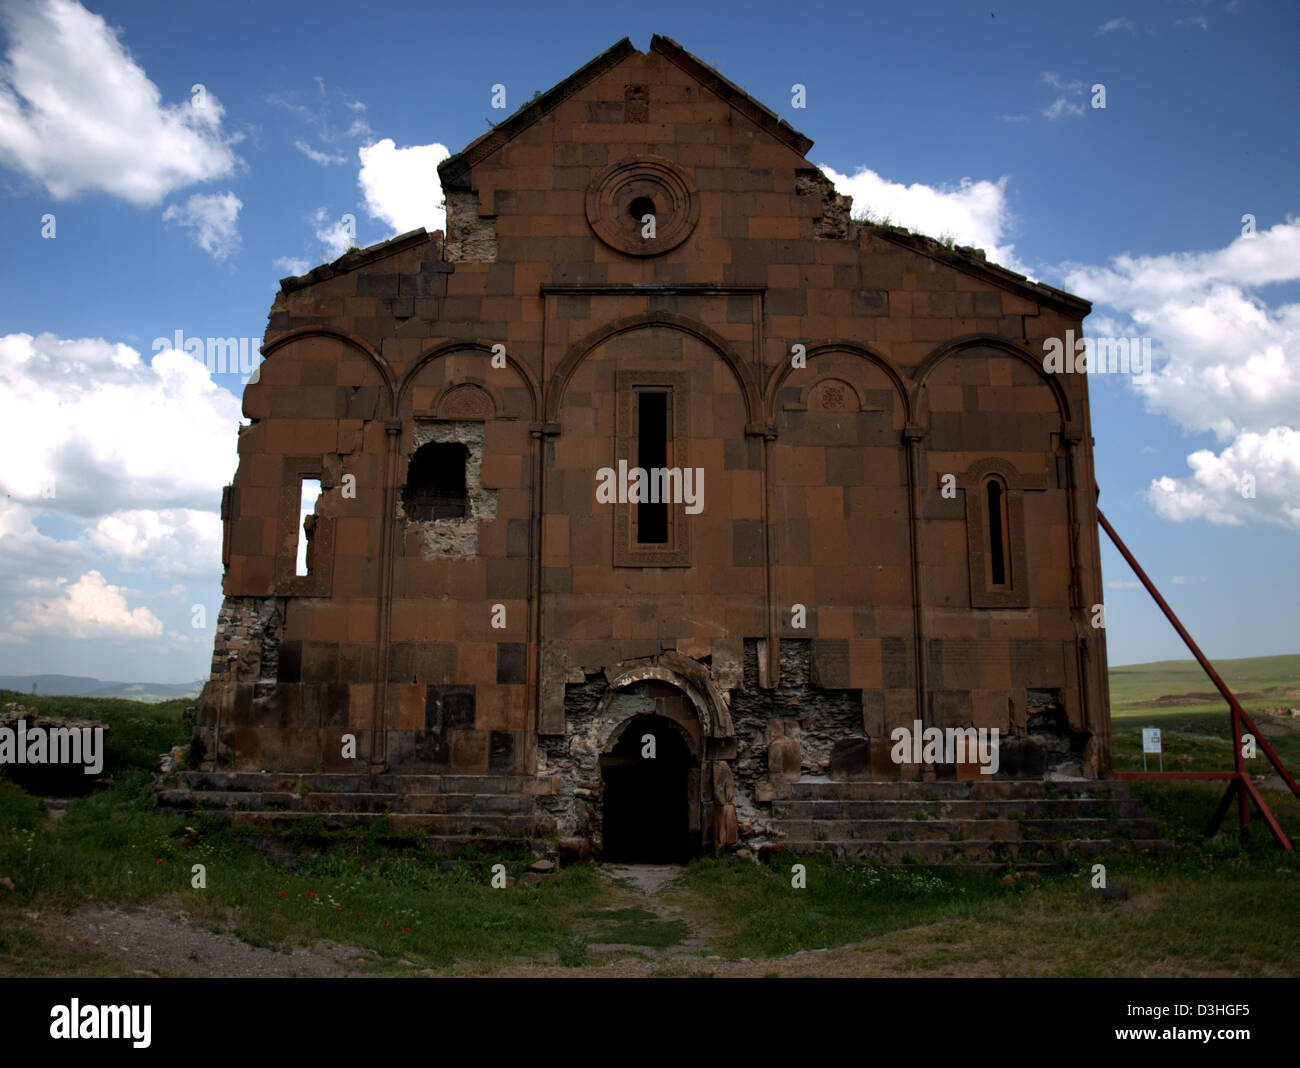 Cattedrale di Ani, presso i ruderi della antica città di Armenia di Ani, nei pressi di Kars, Turchia orientale. Foto Stock